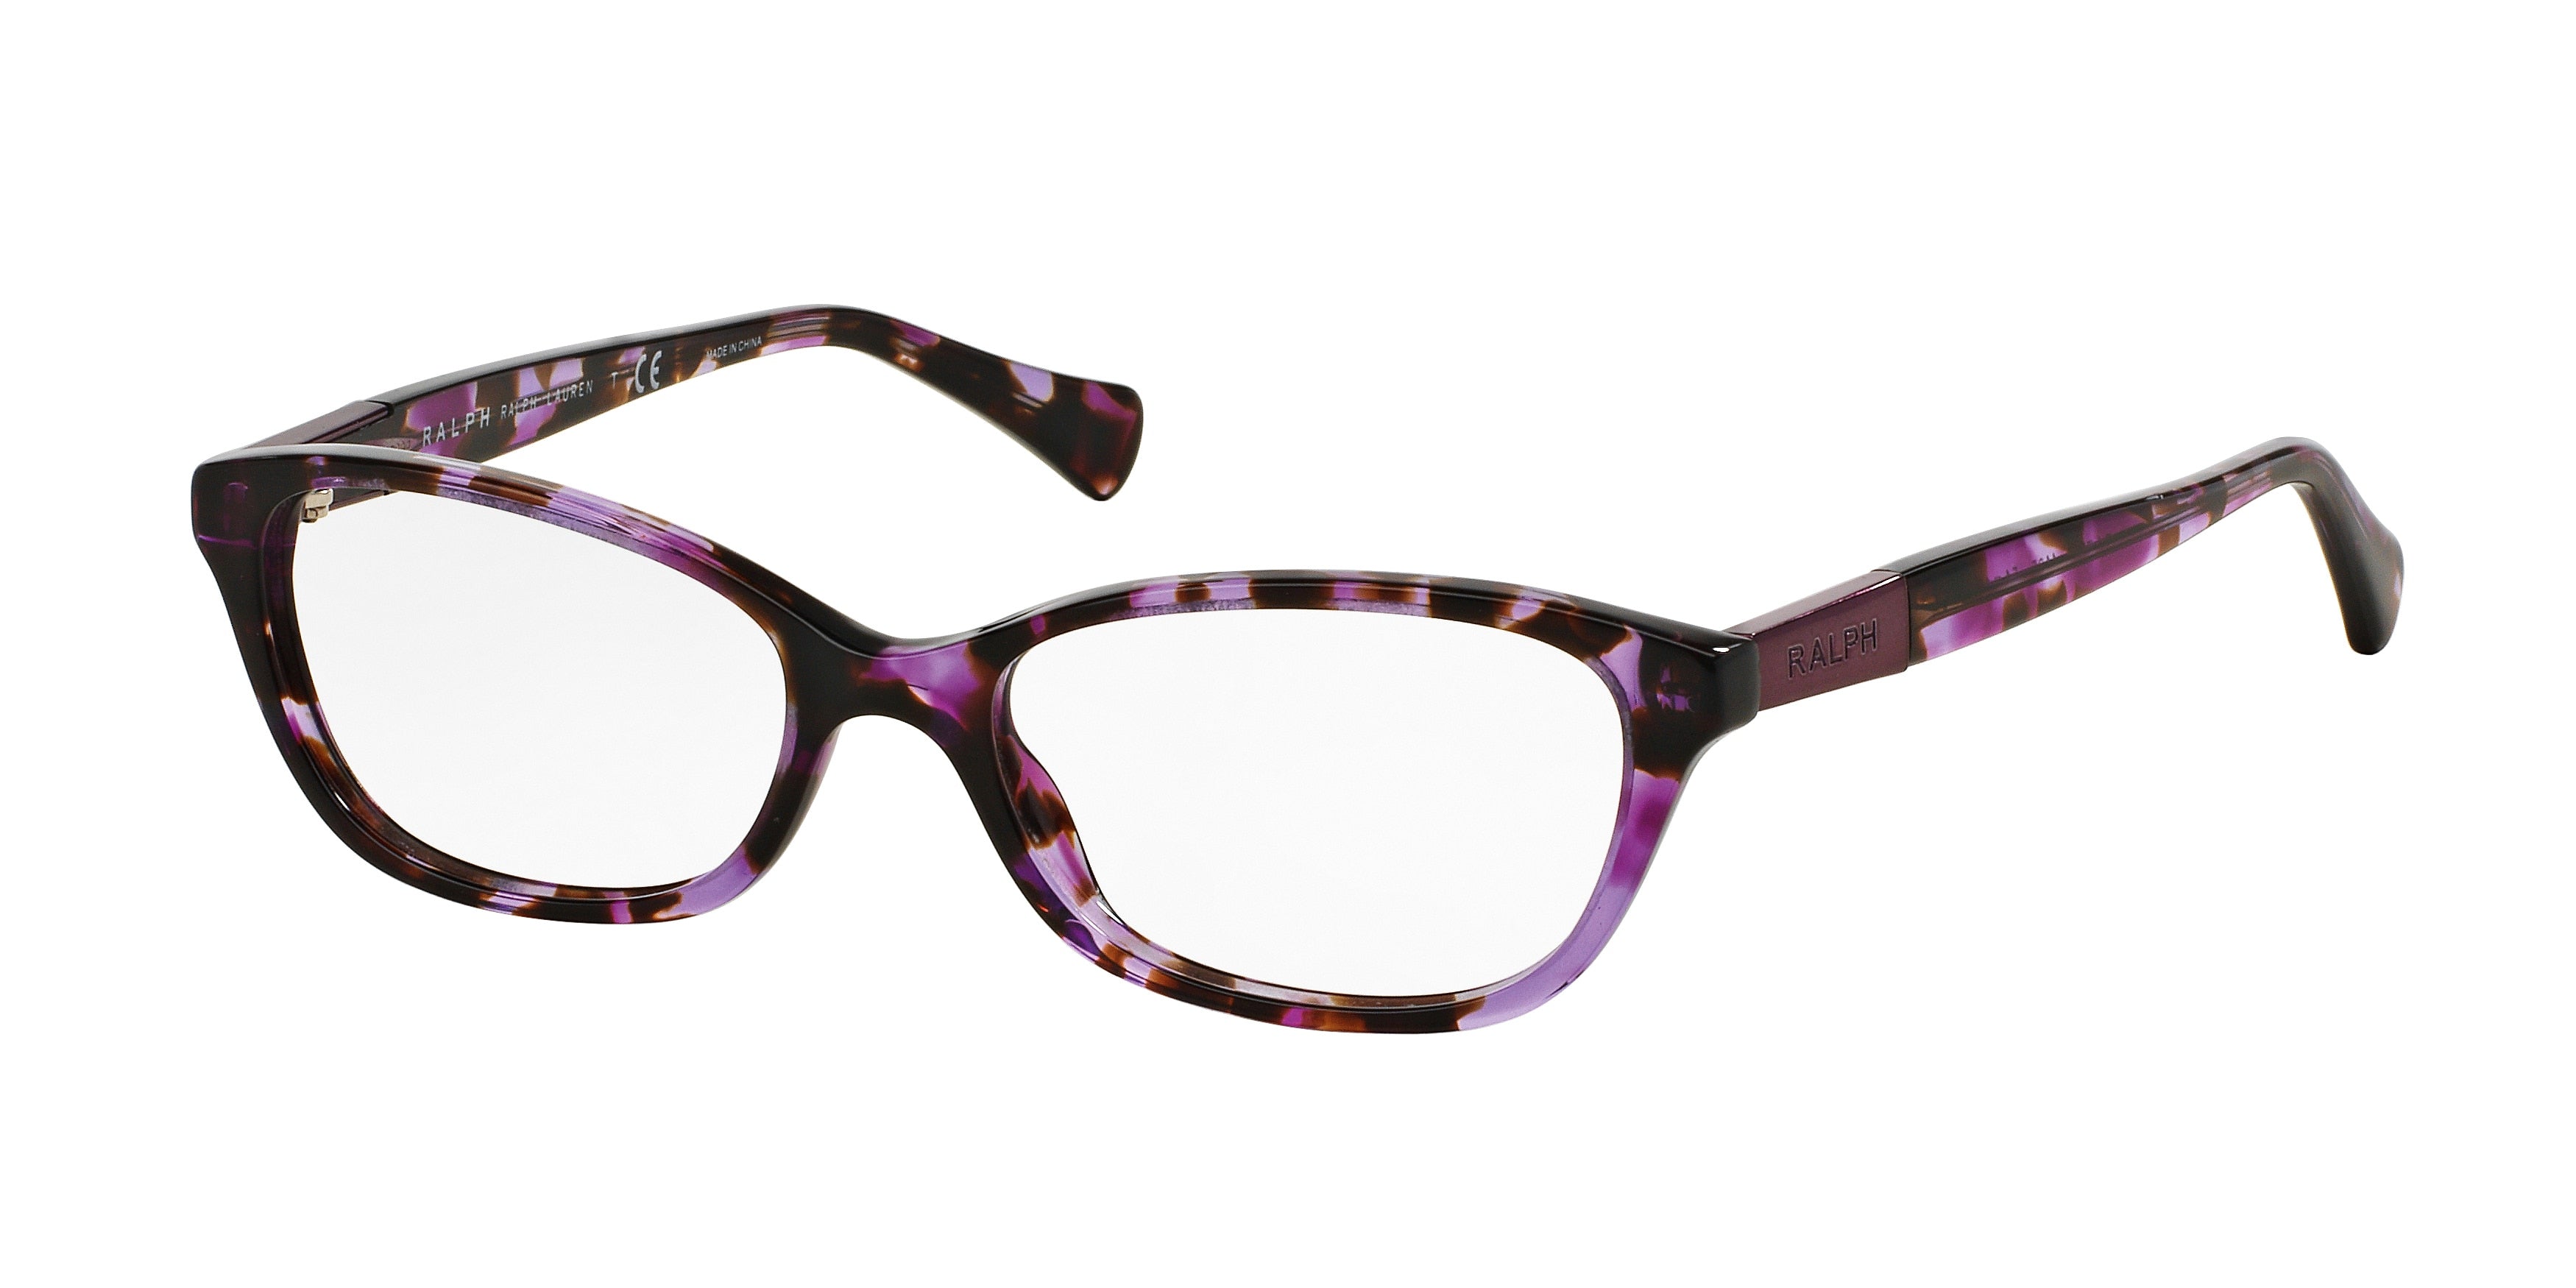 Ralph RA7049 Cat Eye Eyeglasses  1135-Violet Tortoise 51-135-16 - Color Map Violet